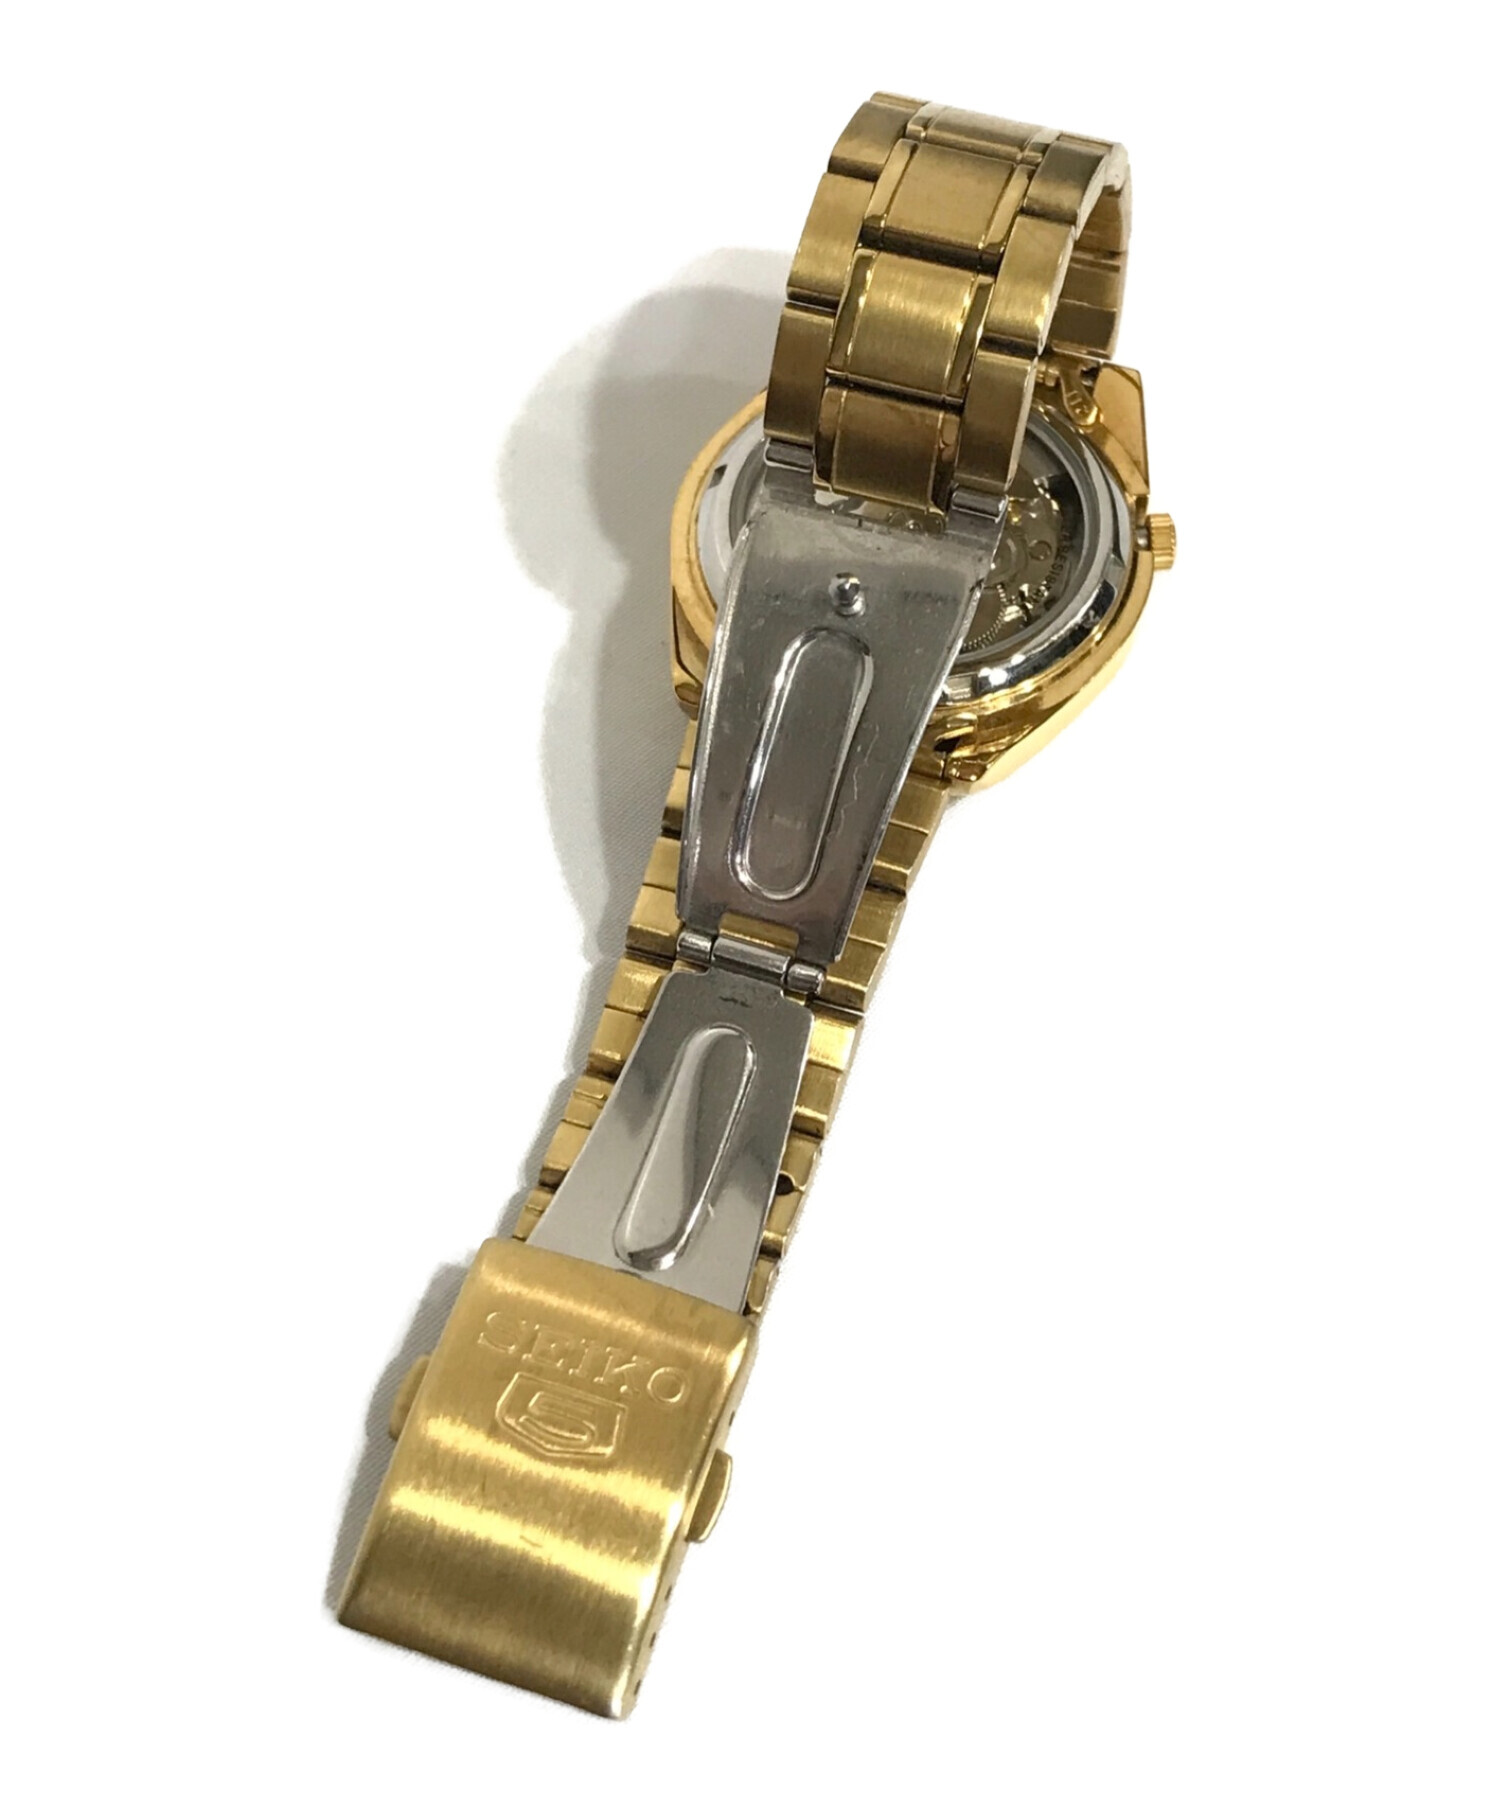 SEIKO (セイコー) セイコー5 7S26-01V0 自動巻腕時計 ゴールド サイズ:記載なし